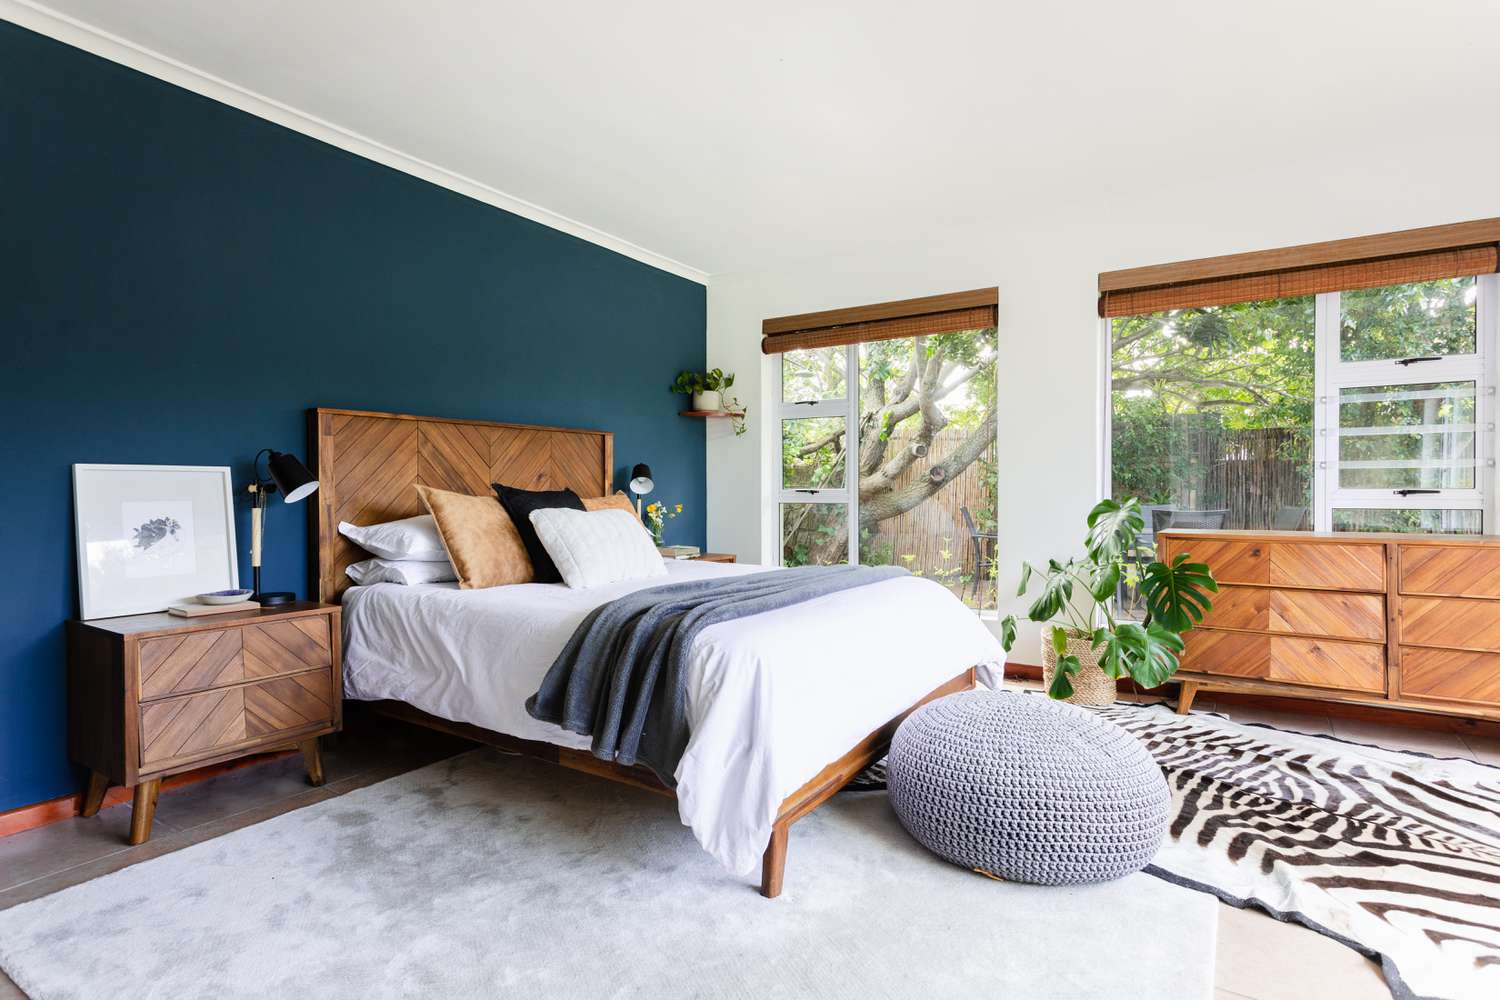 Quarto com parede azul-marinho, móveis modernos e de madeira de meados do século e janelas grandes